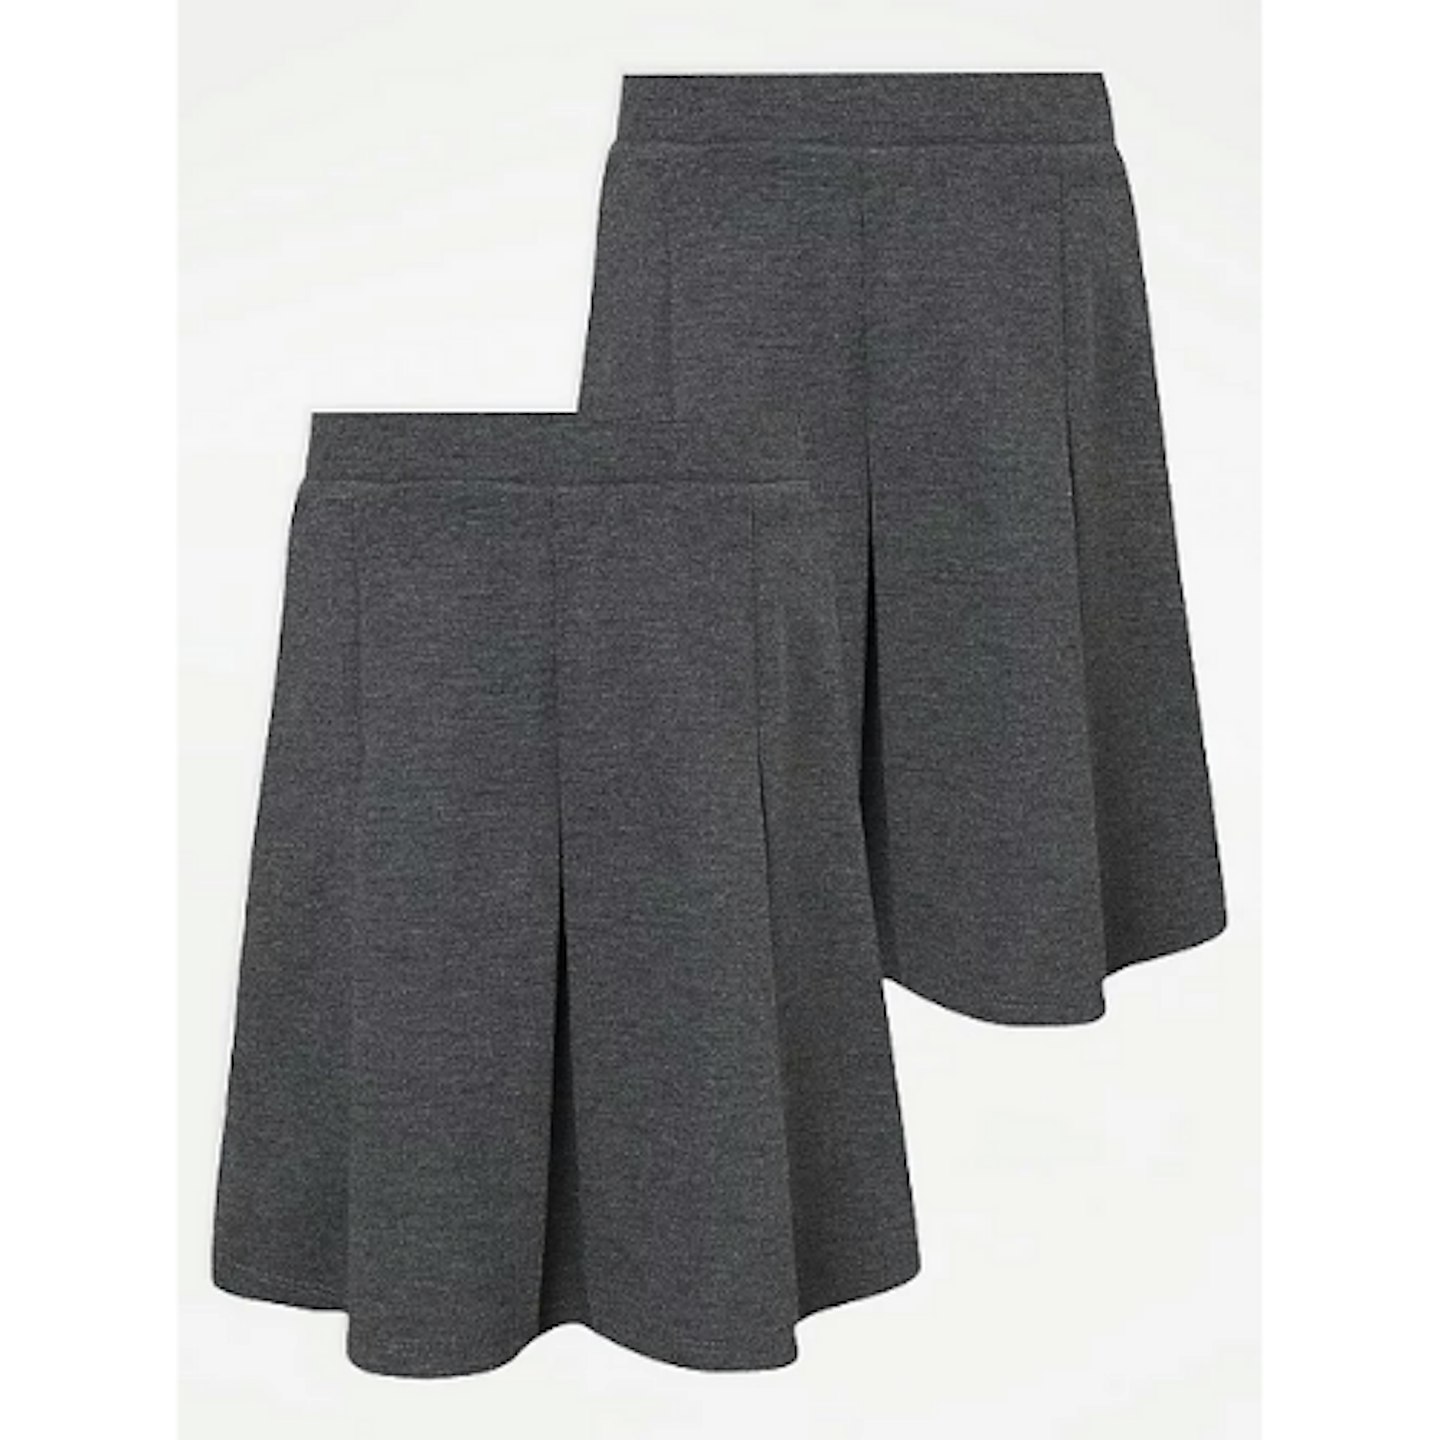 Girls Grey Box Pleat Easy On Skirt (2 Pack)